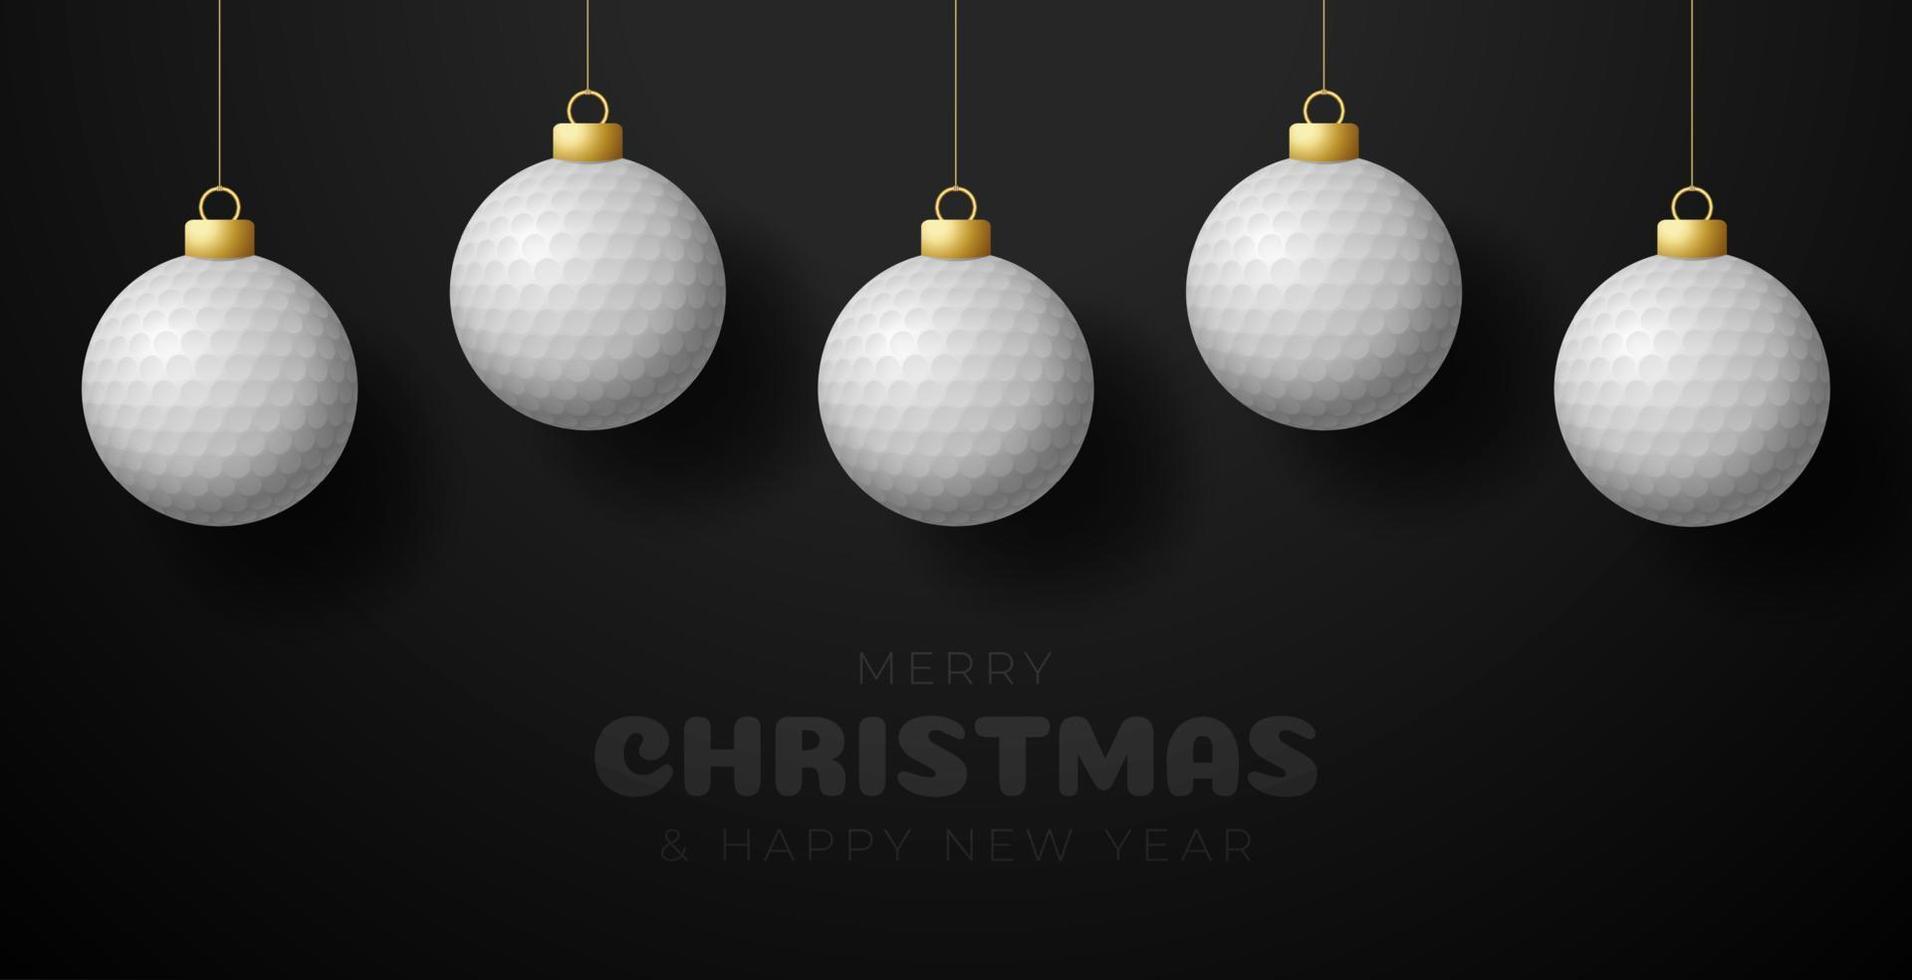 tarjeta de felicitación de navidad de golf. feliz navidad y próspero año nuevo colgar de una pelota de golf de hilo como una pelota de navidad. Ilustración de vector de deporte.